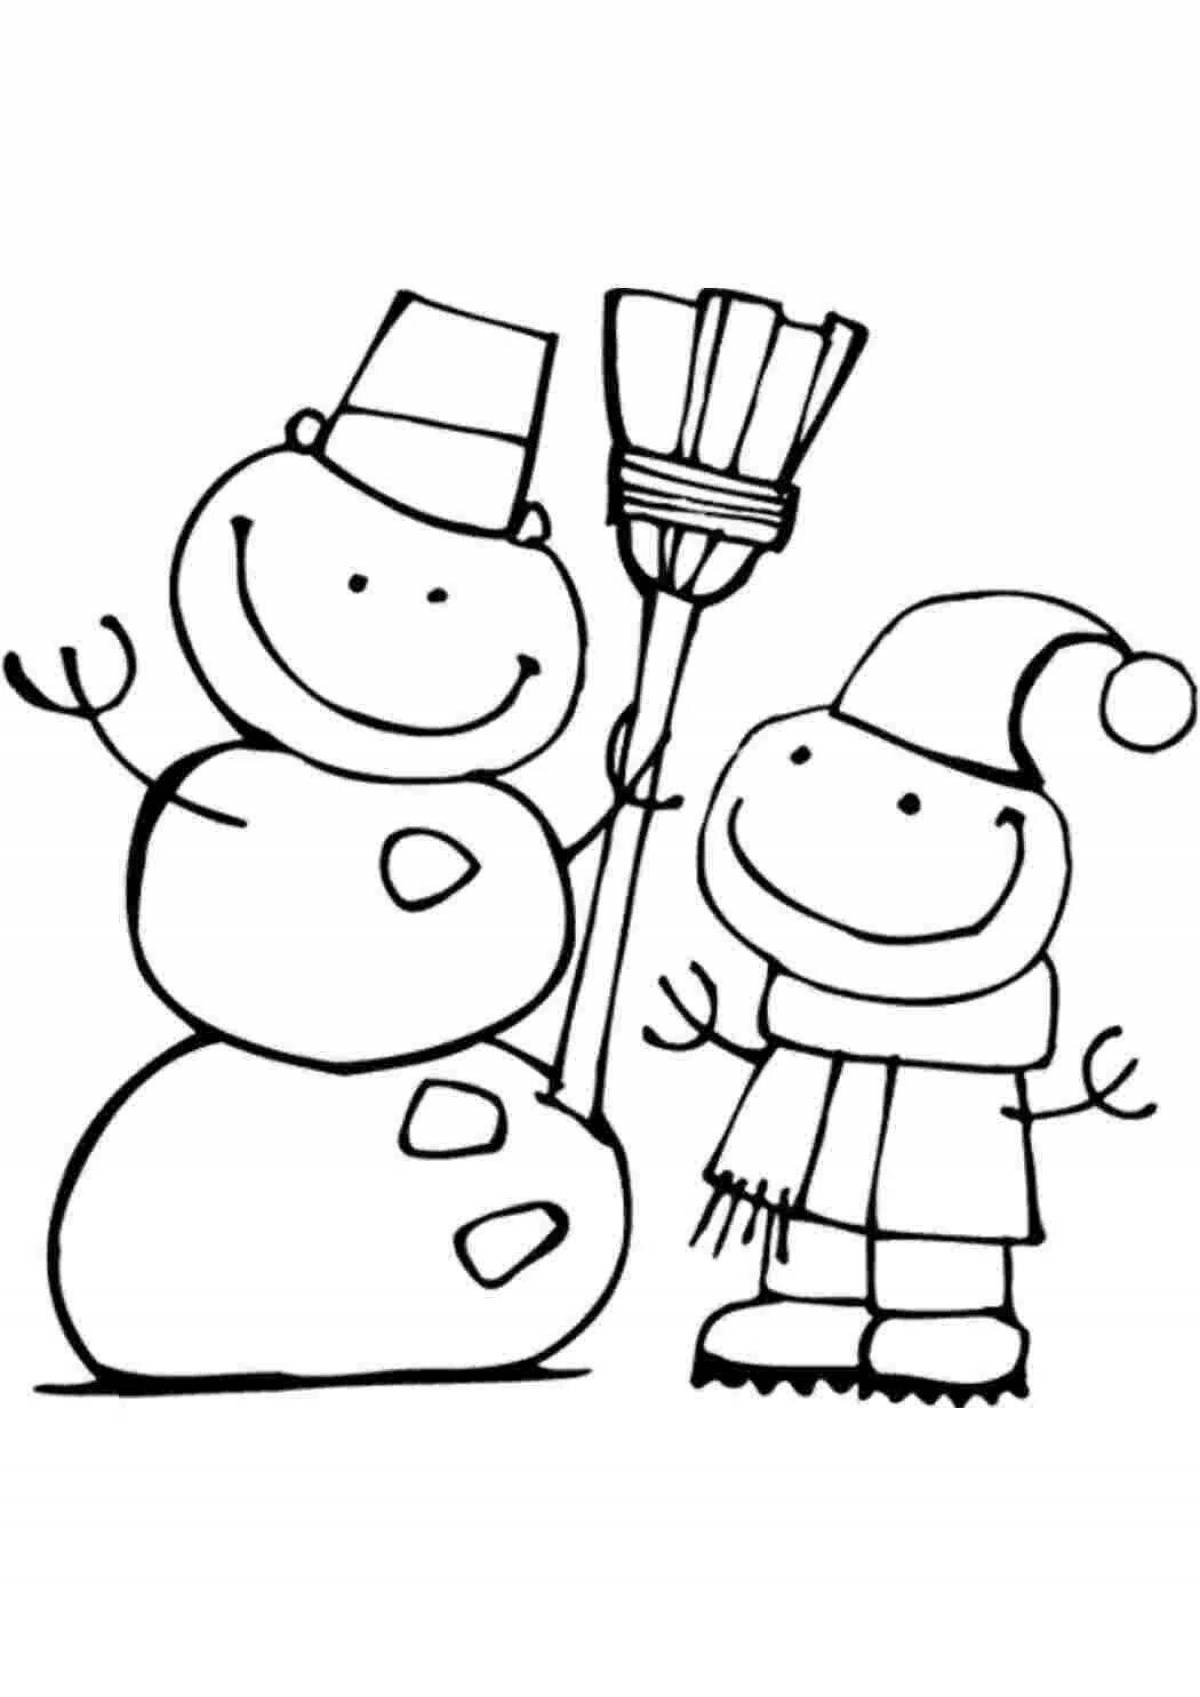 Joyful coloring cute snowman